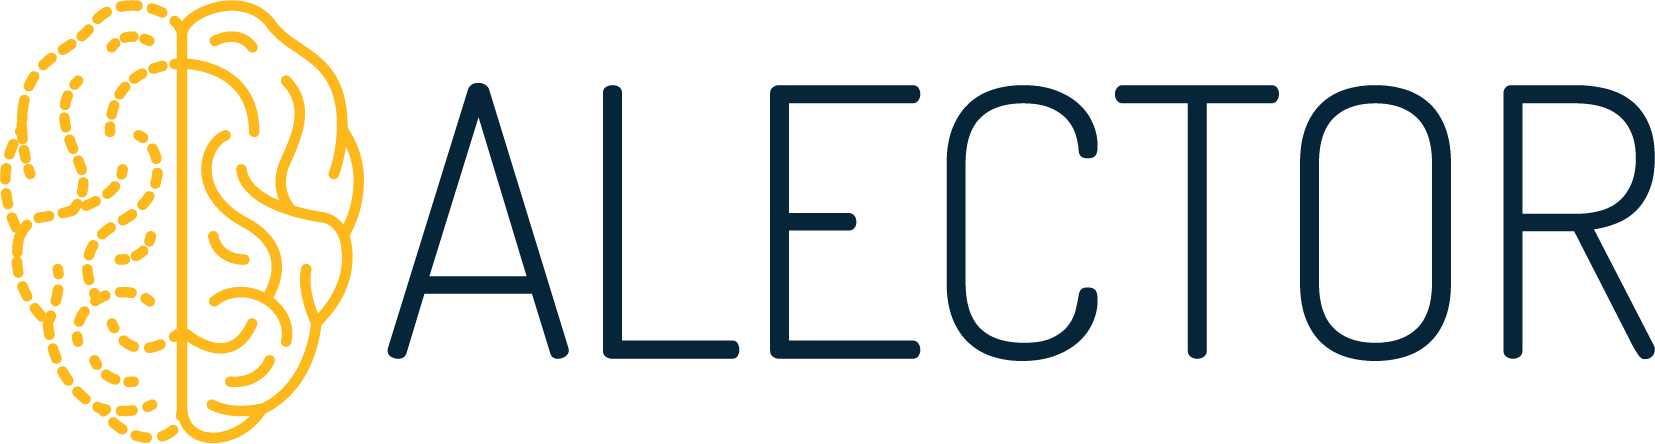 Alector Logo